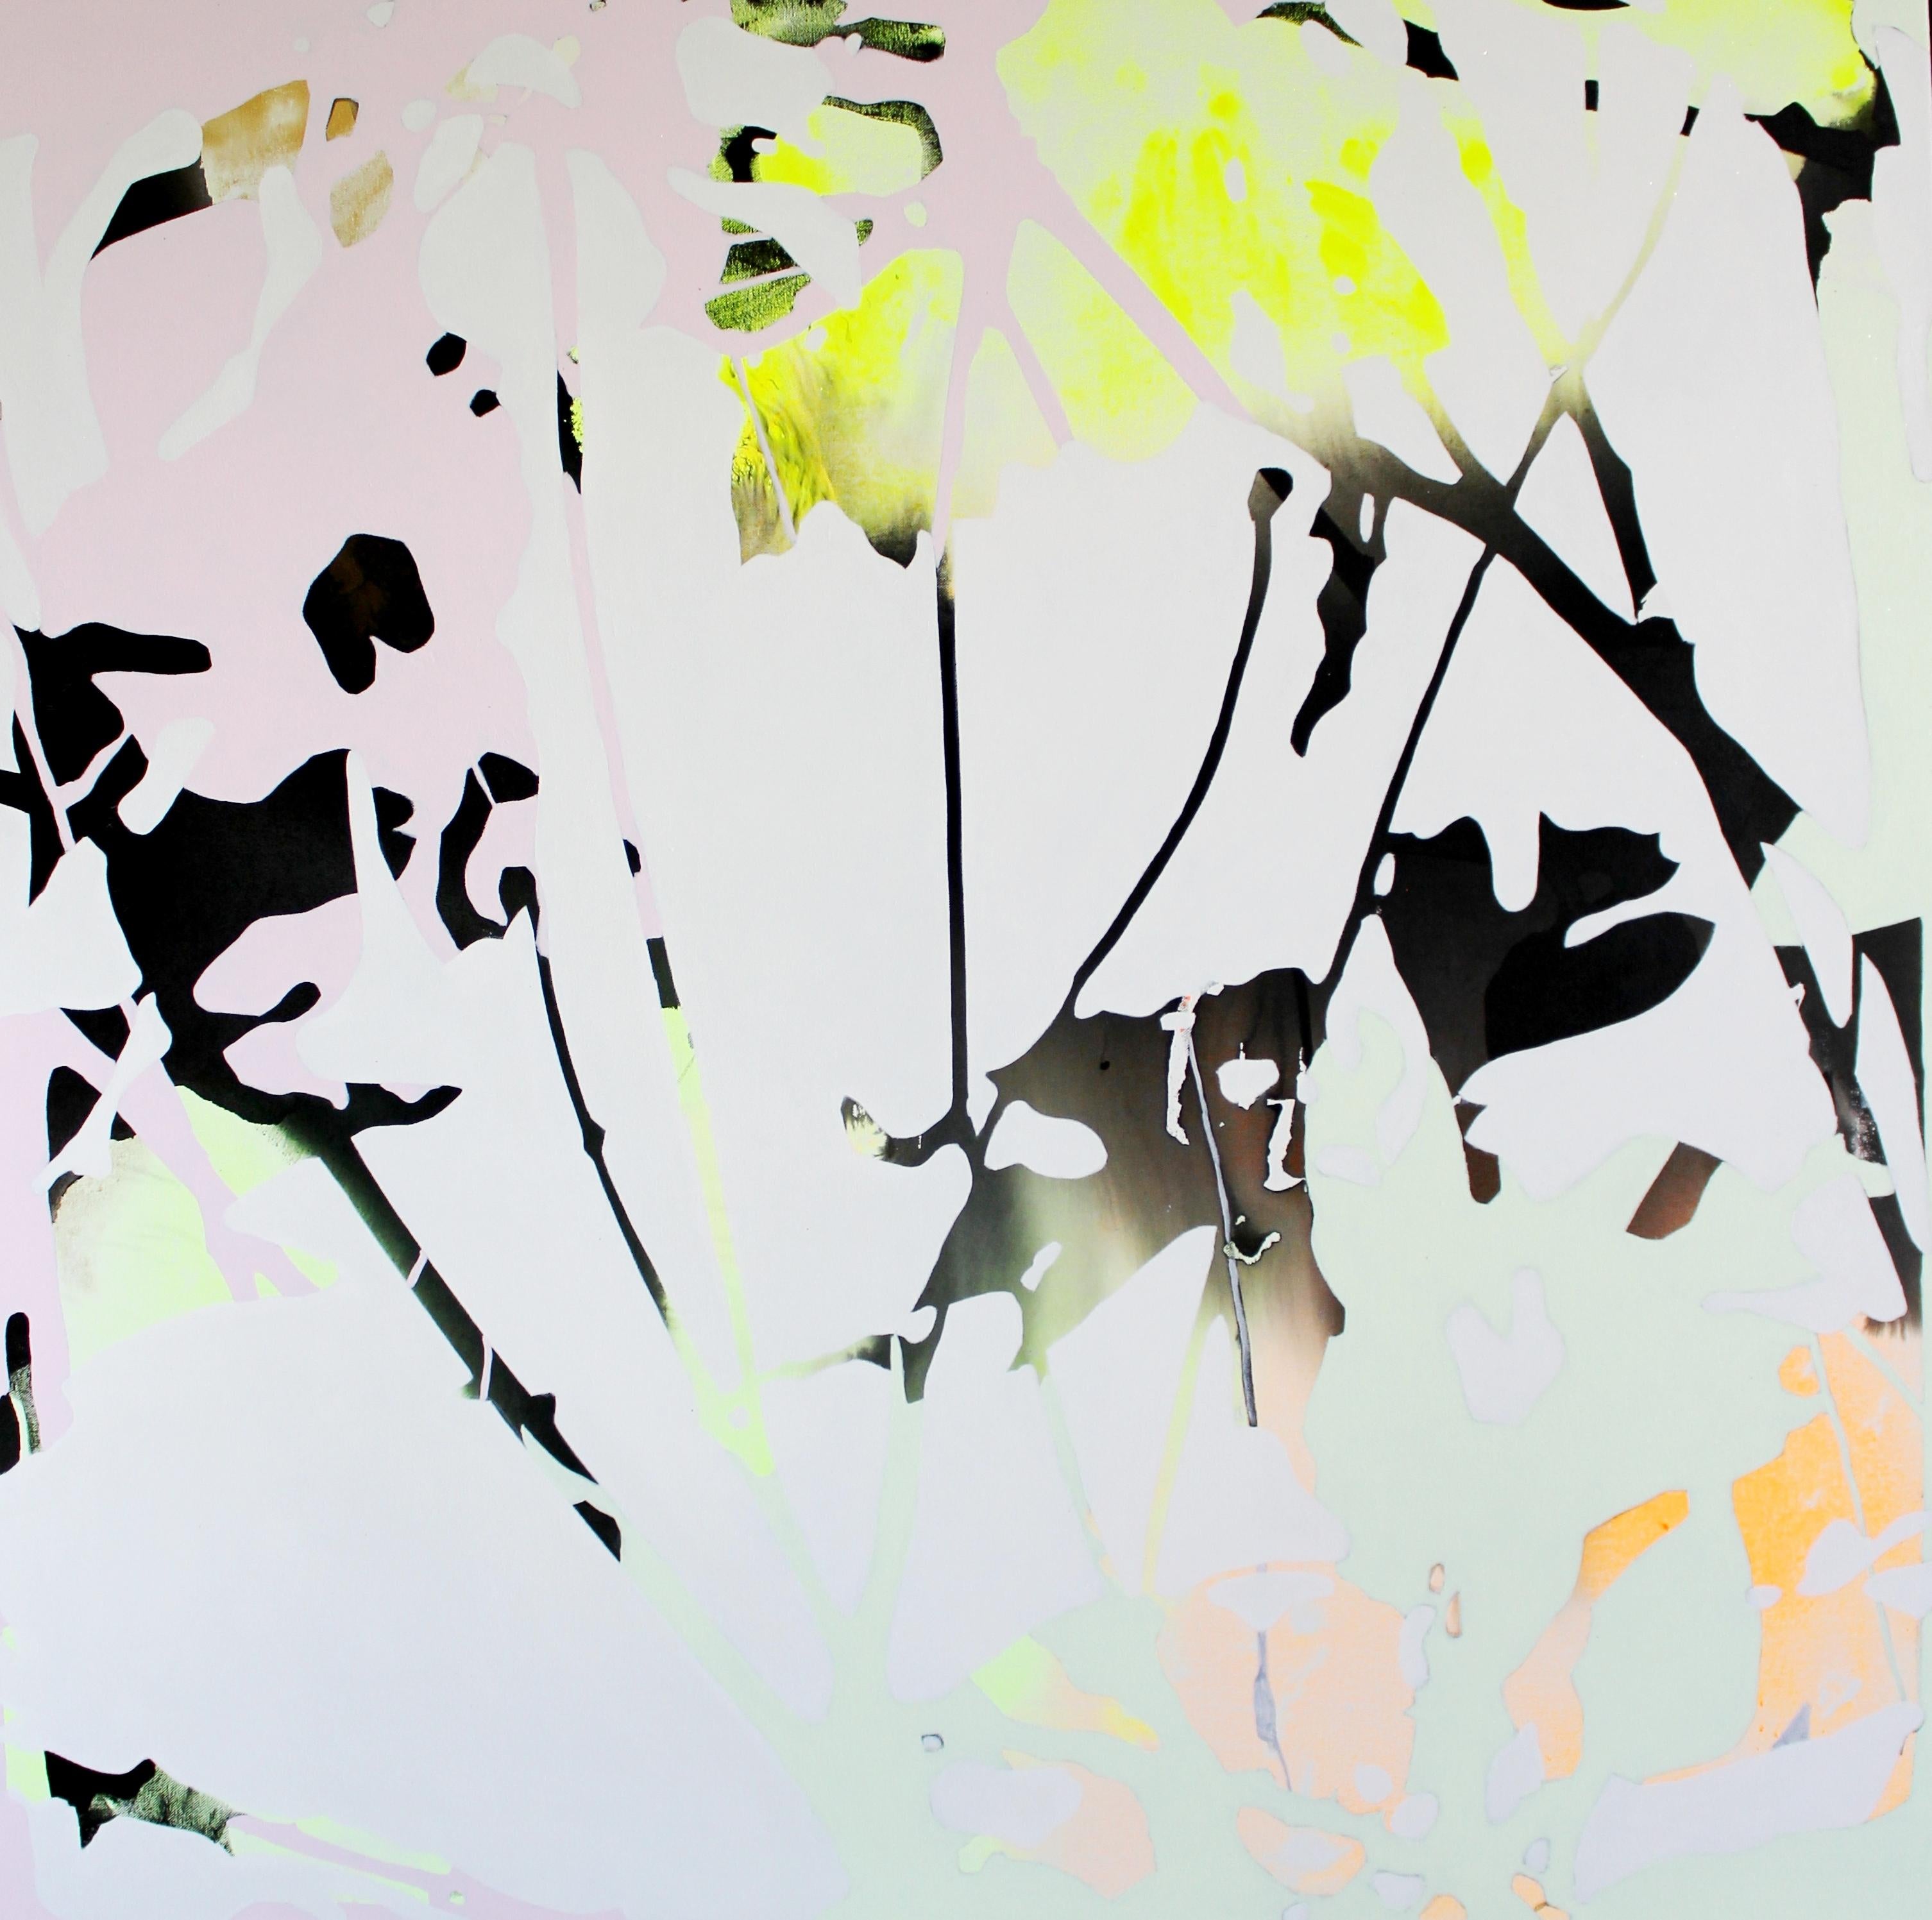 Sibel Kocabasi Abstract Painting - Water Reflection at Juno